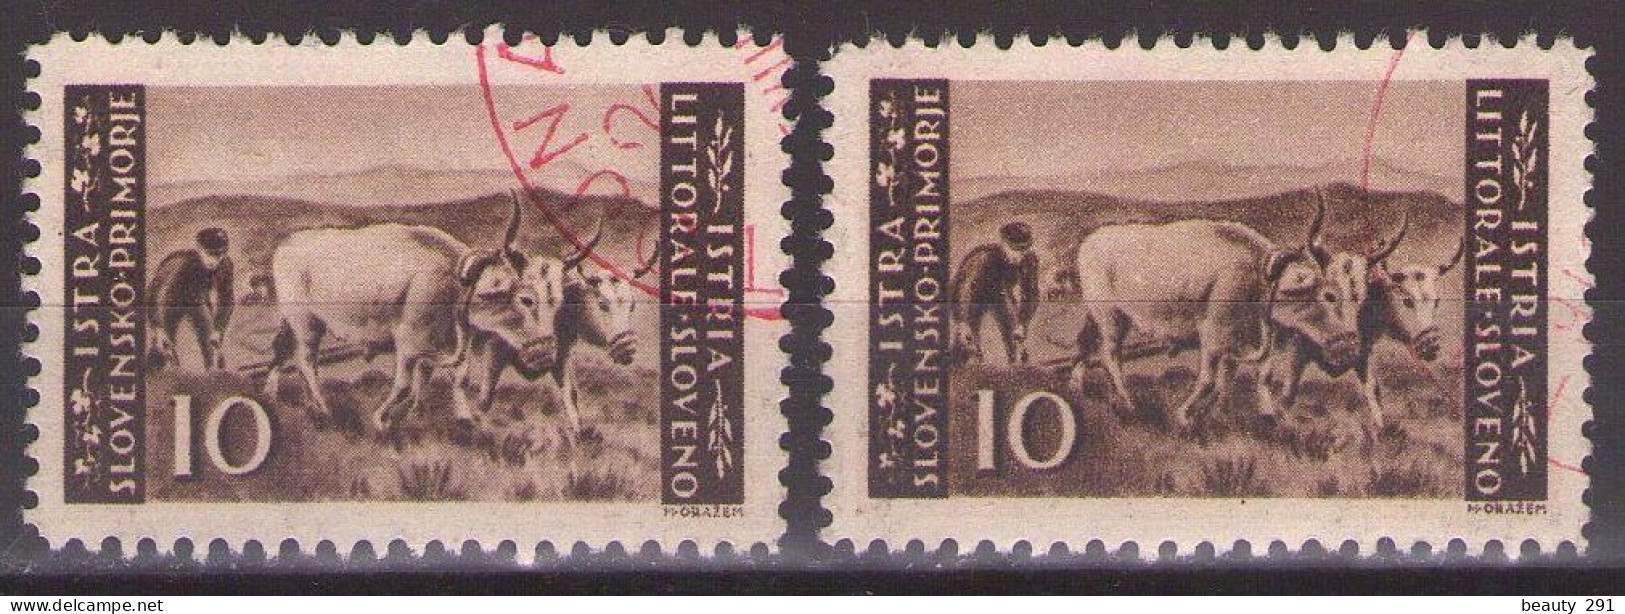 ISTRIA E LITORALE SLOVENO 1945. Tiratura Di Lubiana, Dent. 10 1/2-11 1/2, Sass. 48  USED - Yugoslavian Occ.: Slovenian Shore